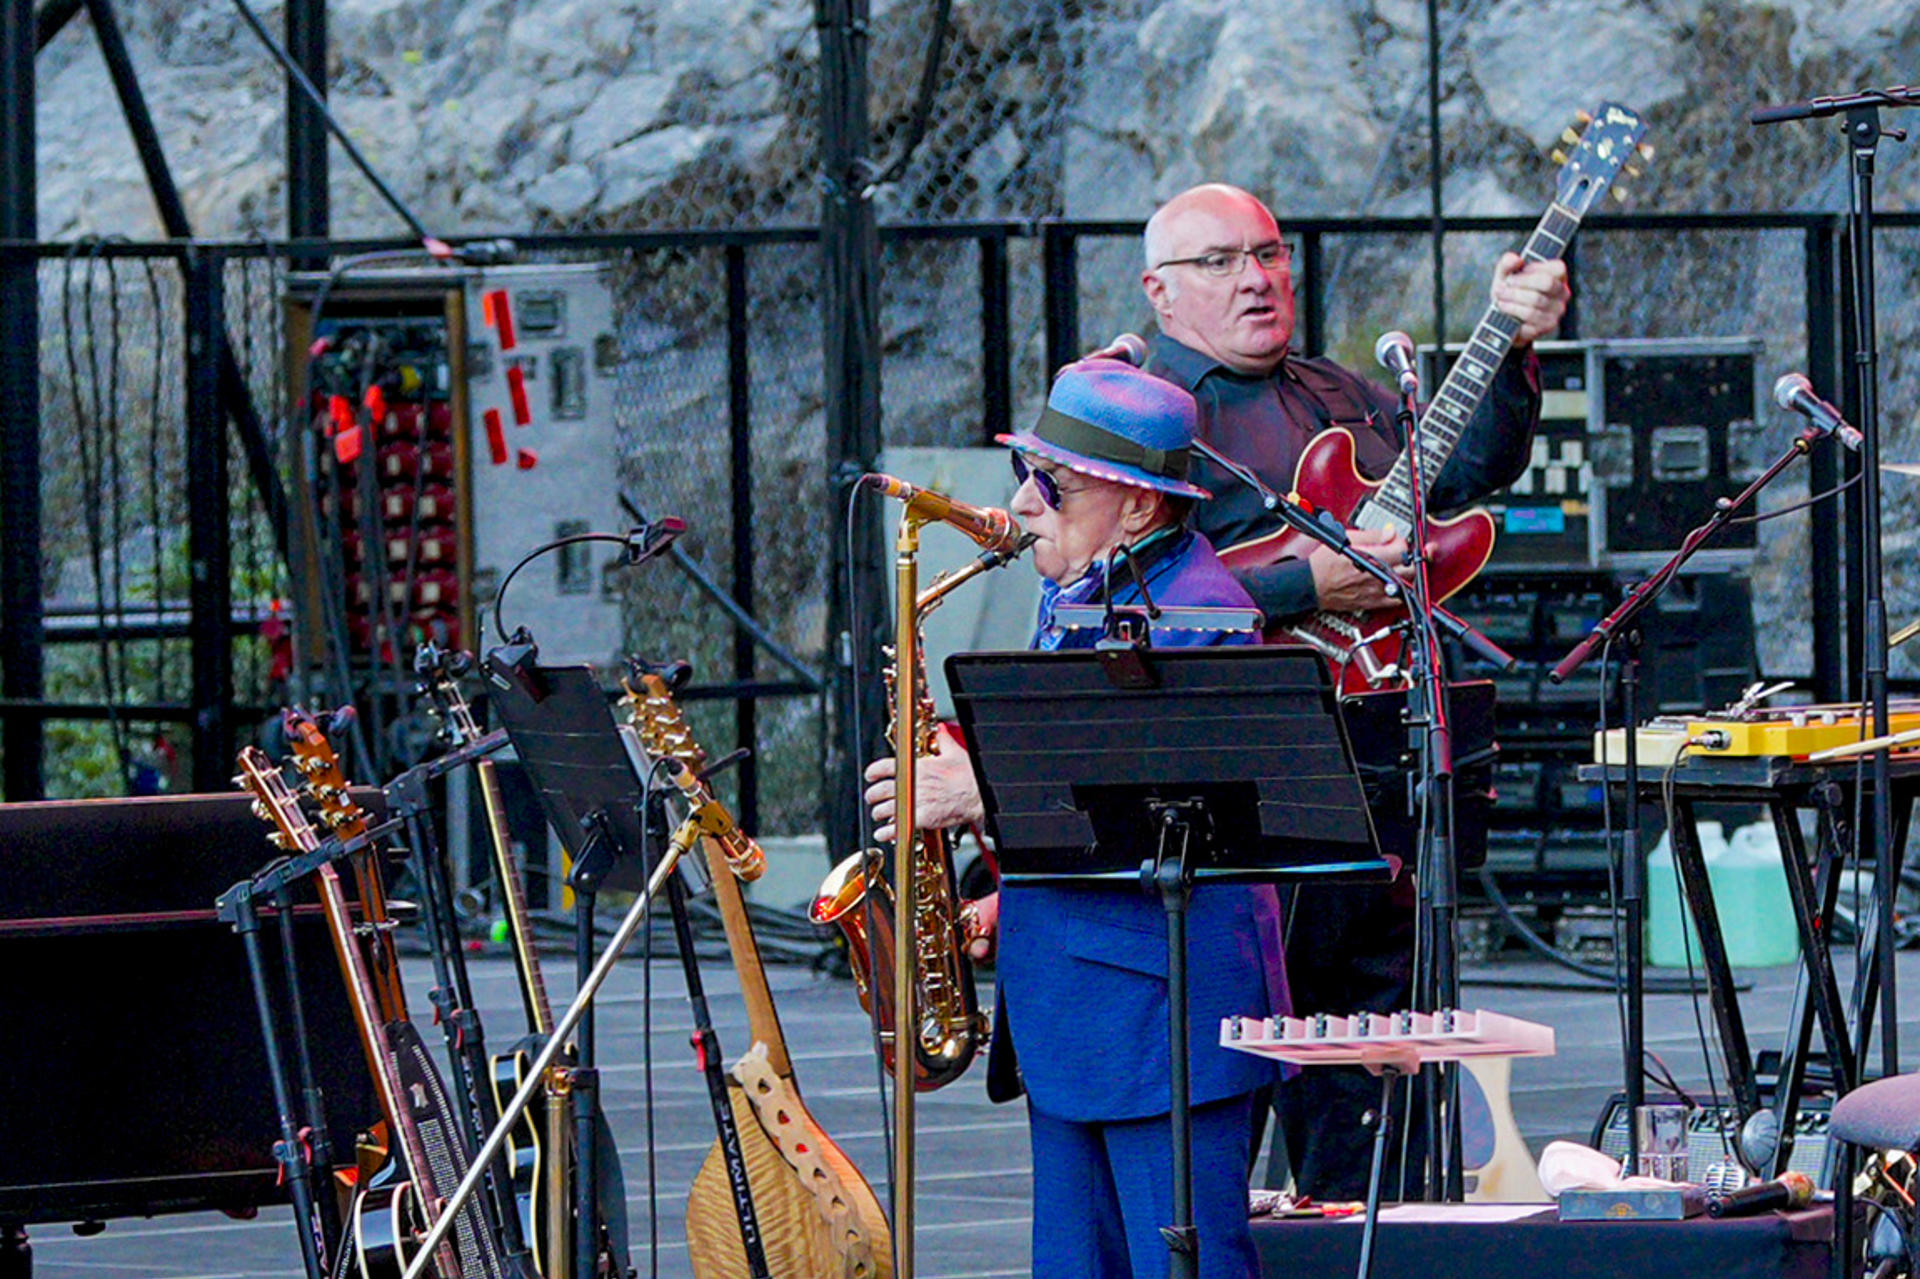 El cantante, compositor y músico británico Van Morrison durante el concierto, único que ofrece en España, que protagoniza en el festival Starlite Occident, hoy sábado en Marbella (Málaga). EFE/Juan Carlos Domínguez
